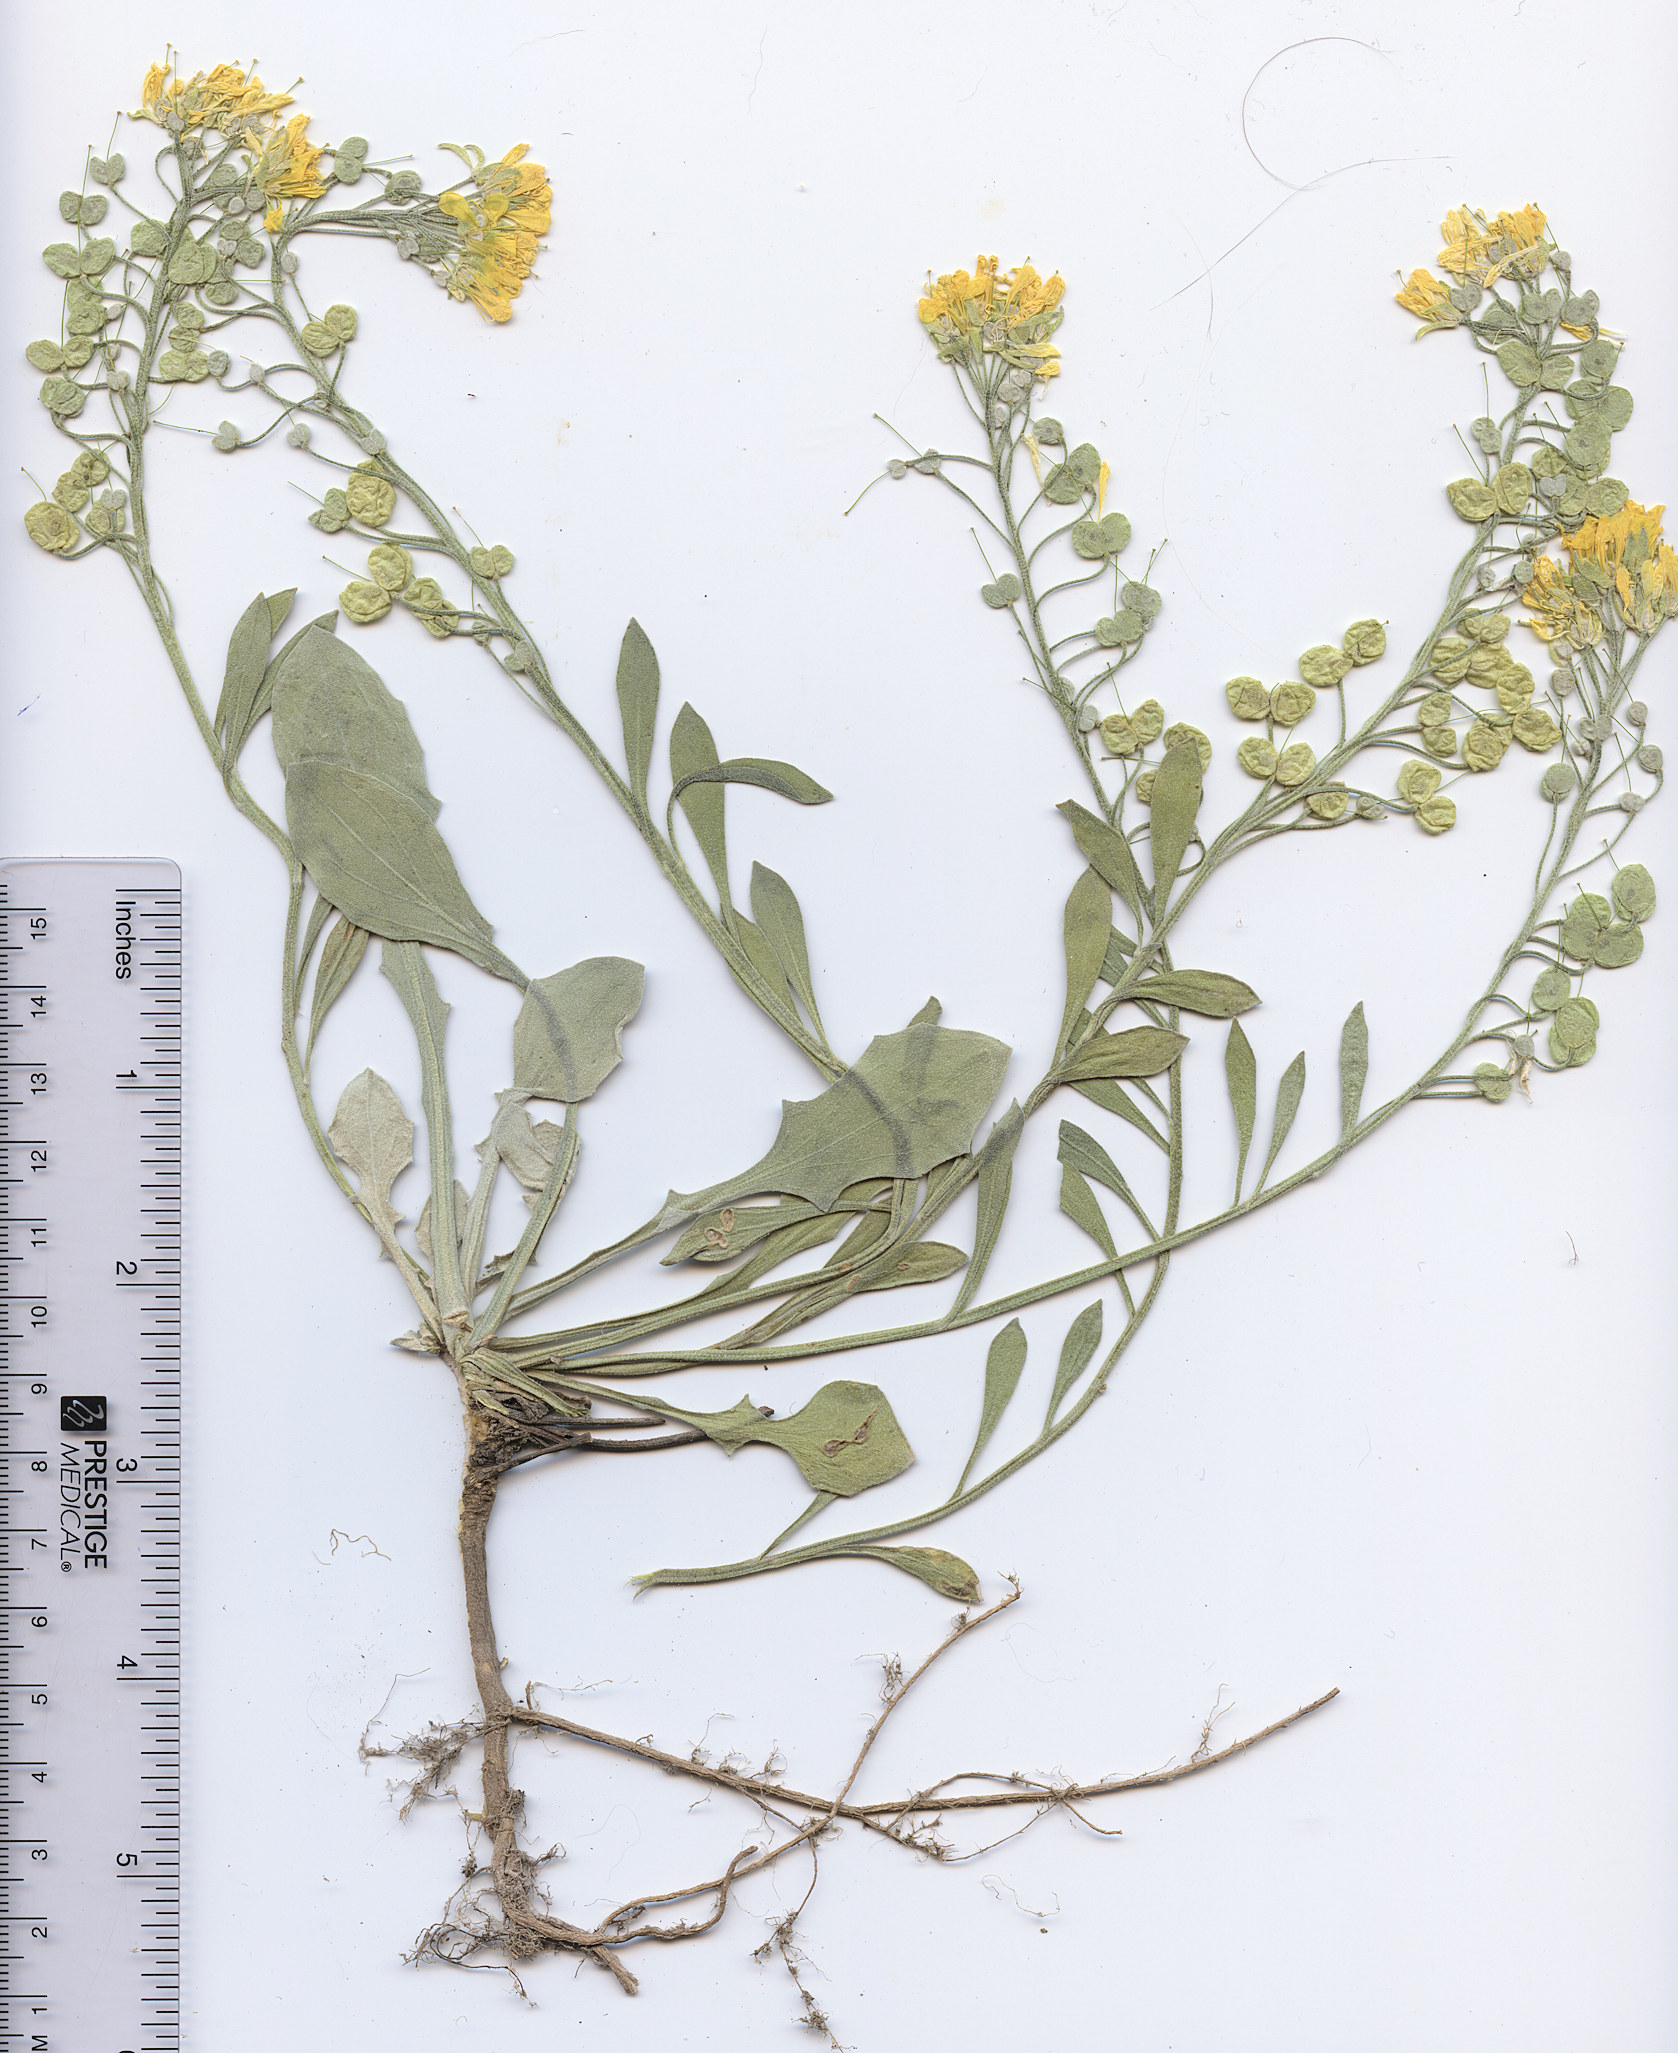 Brassicaceae Physaria vitulifera  bellii